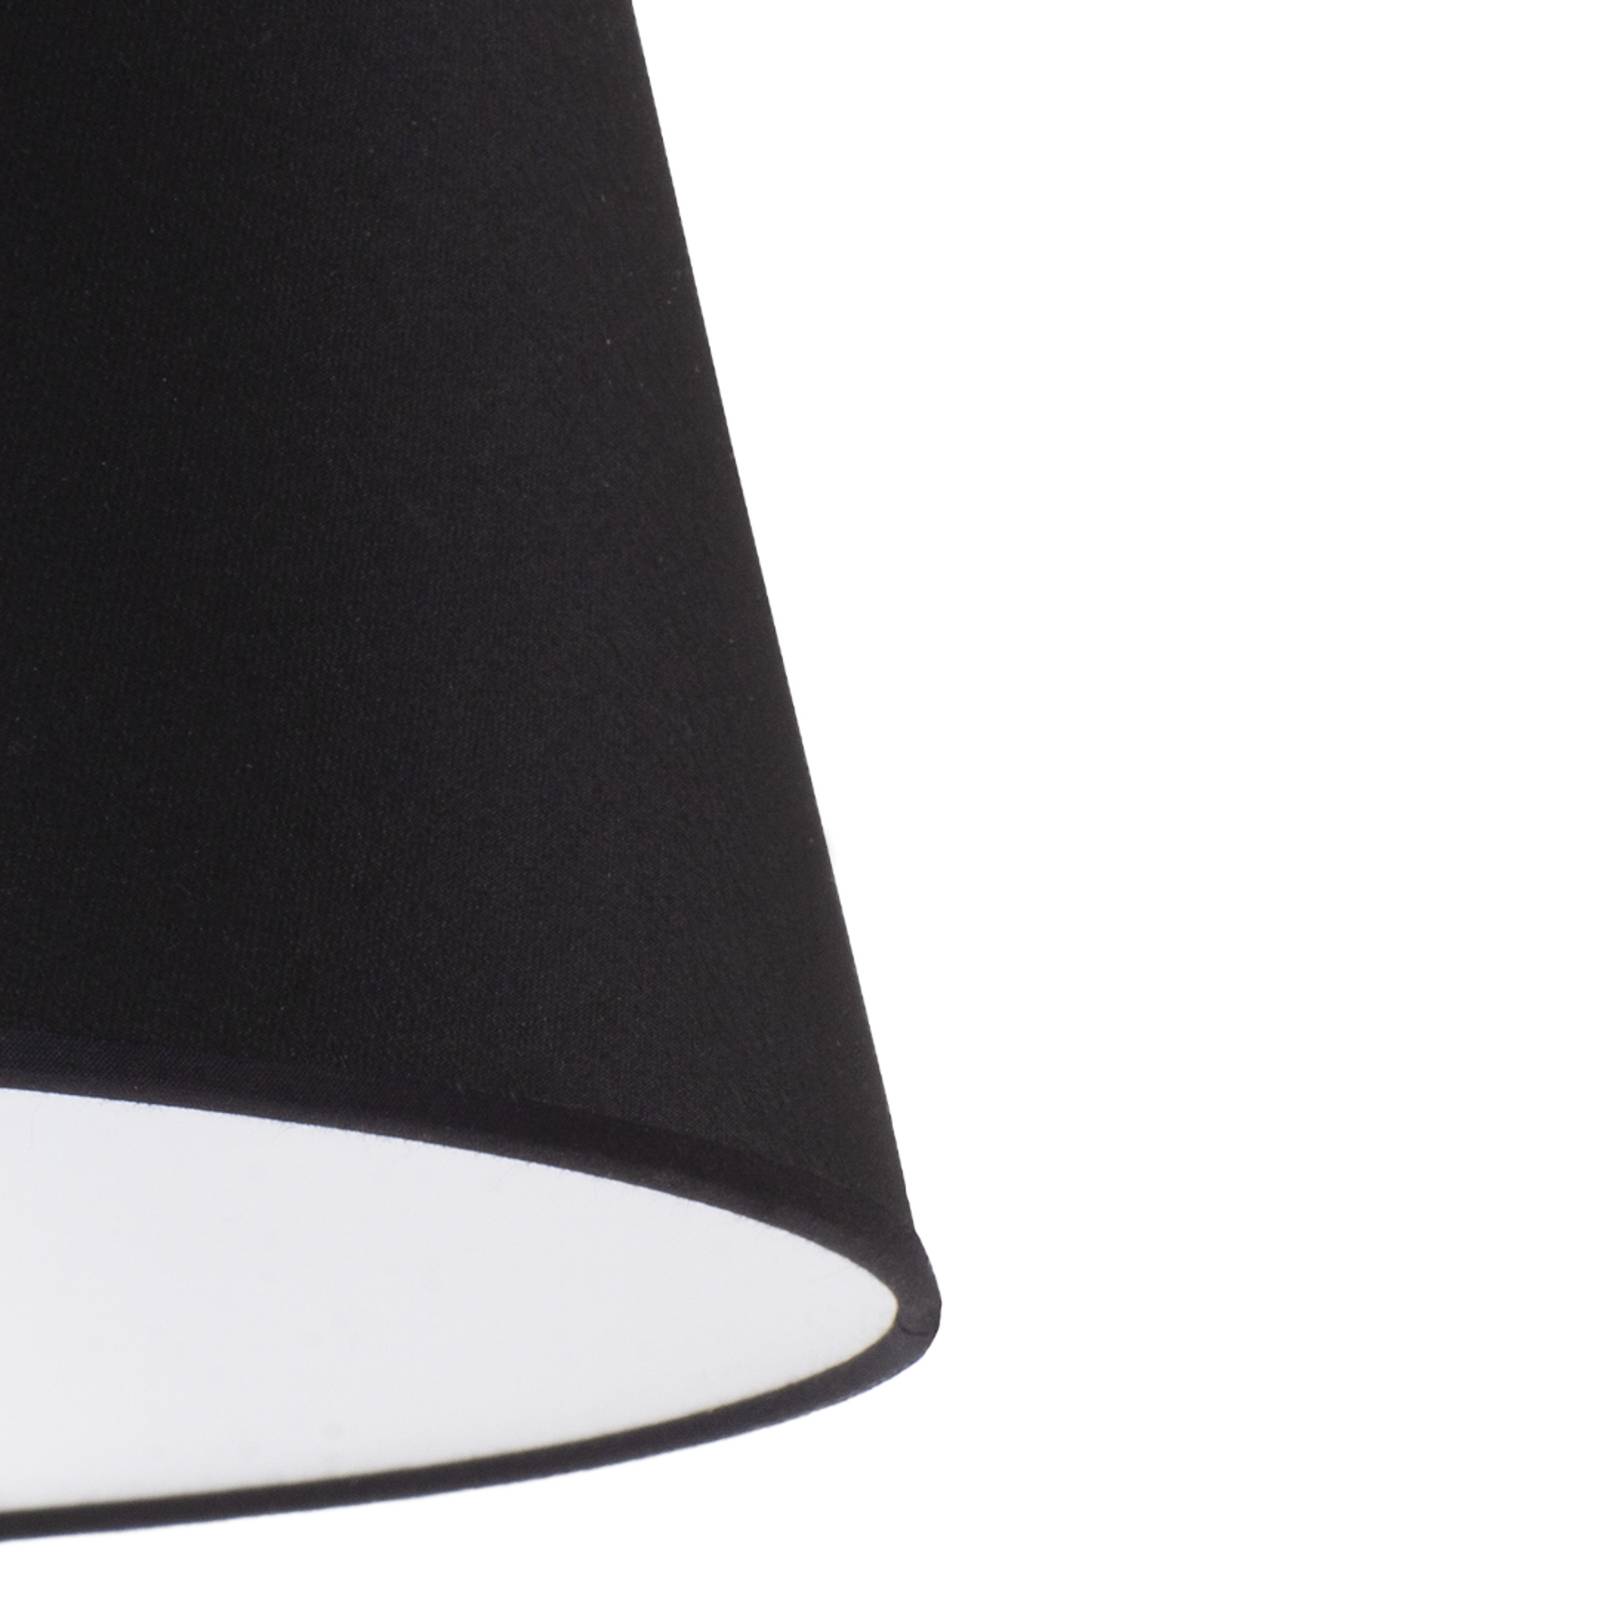 Cone lámpaernyő 18 cm, fekete festett vászon